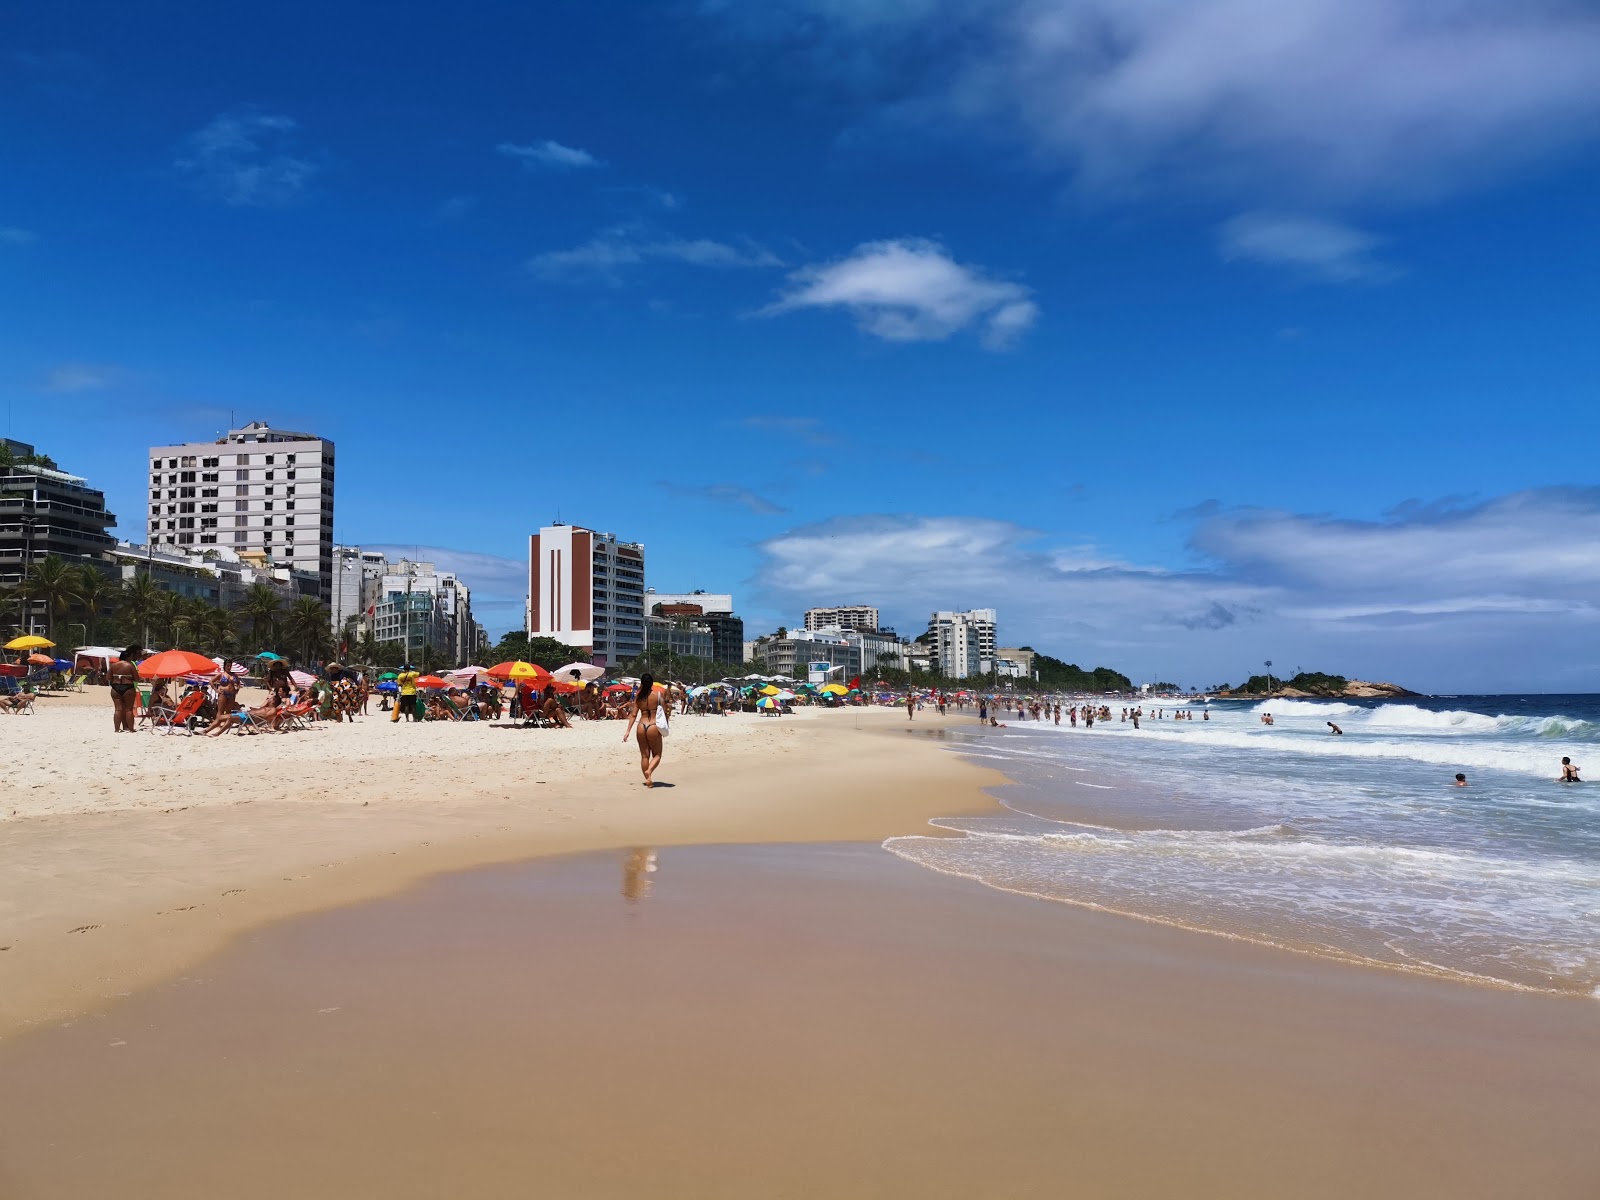 Ipanema Plajı'in fotoğrafı parlak ince kum yüzey ile